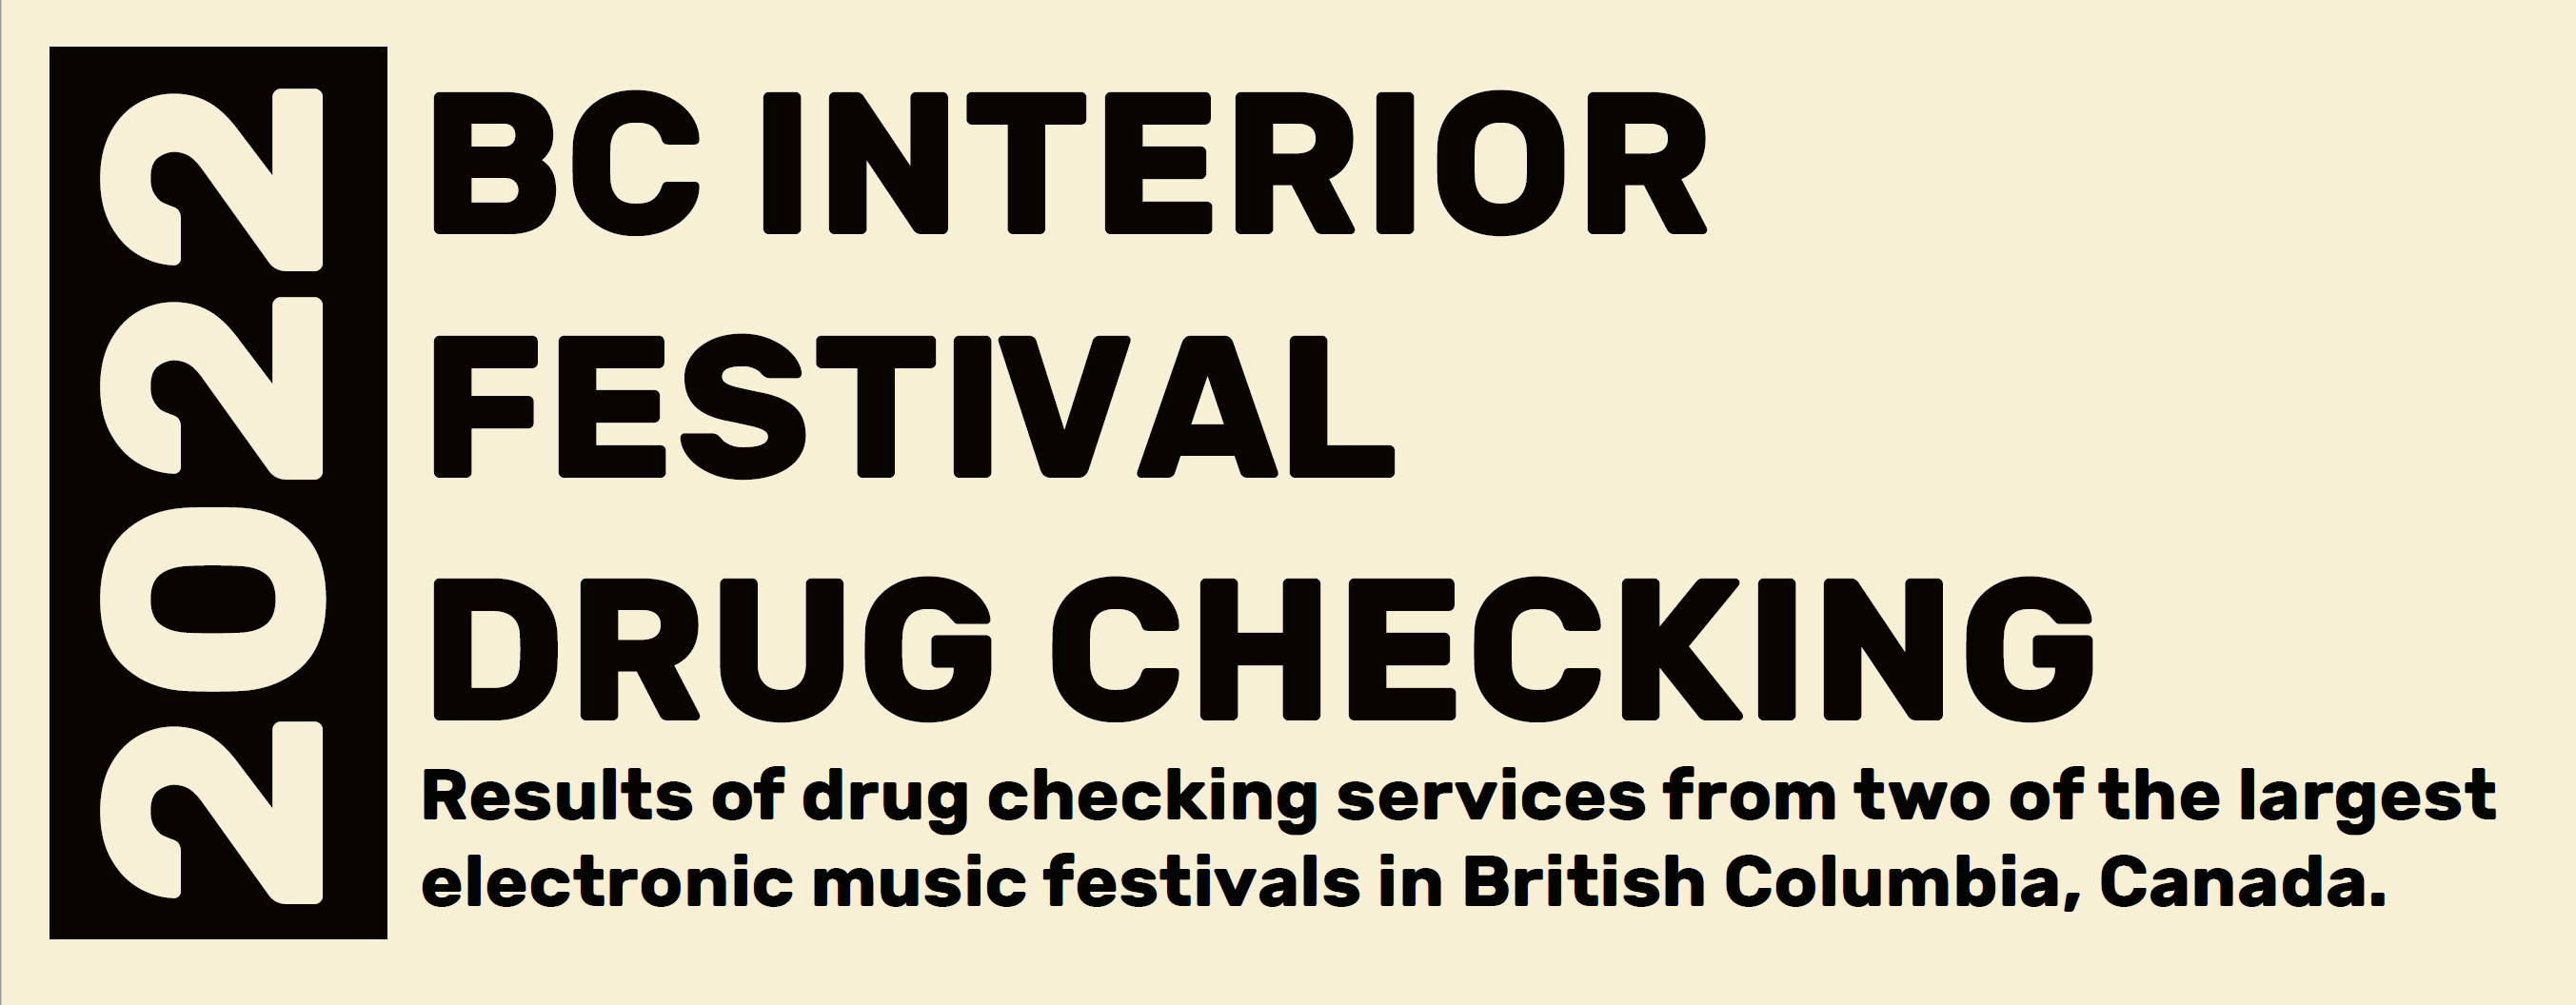 2022 Festival Drug Checking Infographic